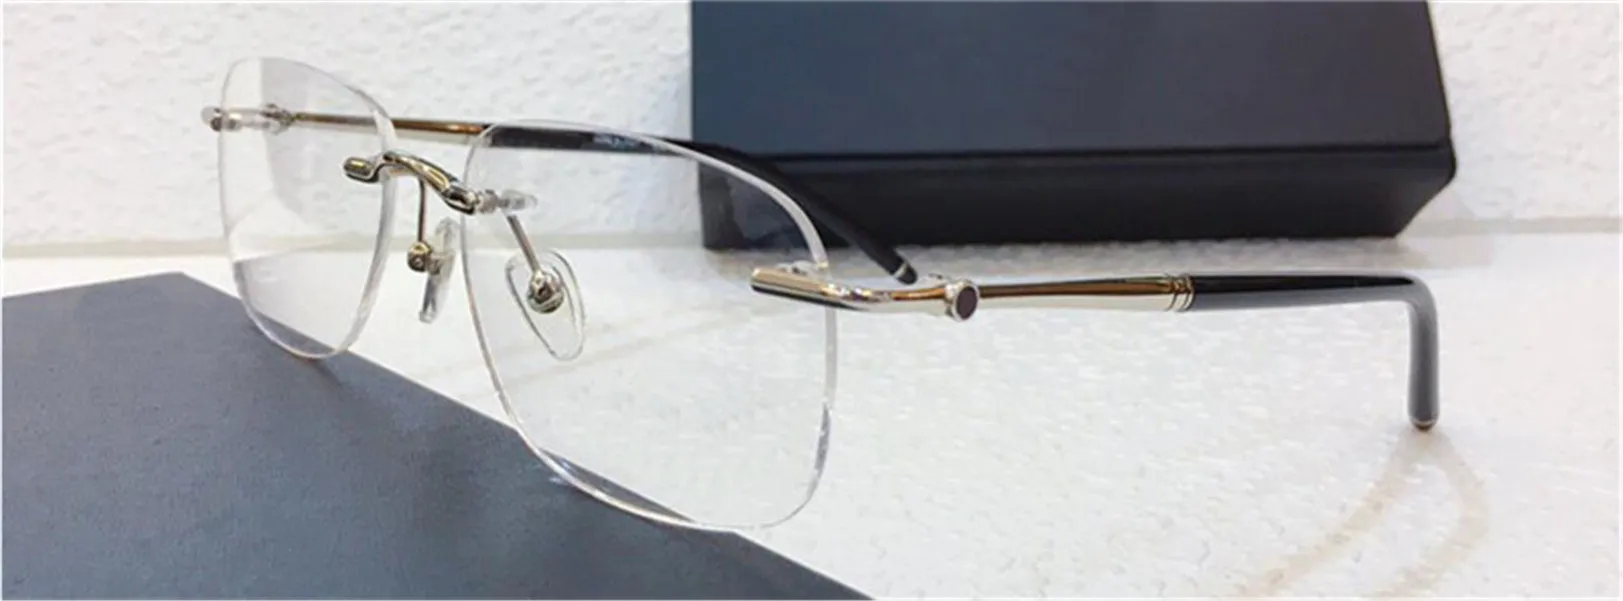 새로운 패션 남성 광학 안경 0071 사각형 프레임이없는 인기있는 디자인 비즈니스 스타일 최고의 품질이있는 안경 케이스 314Y